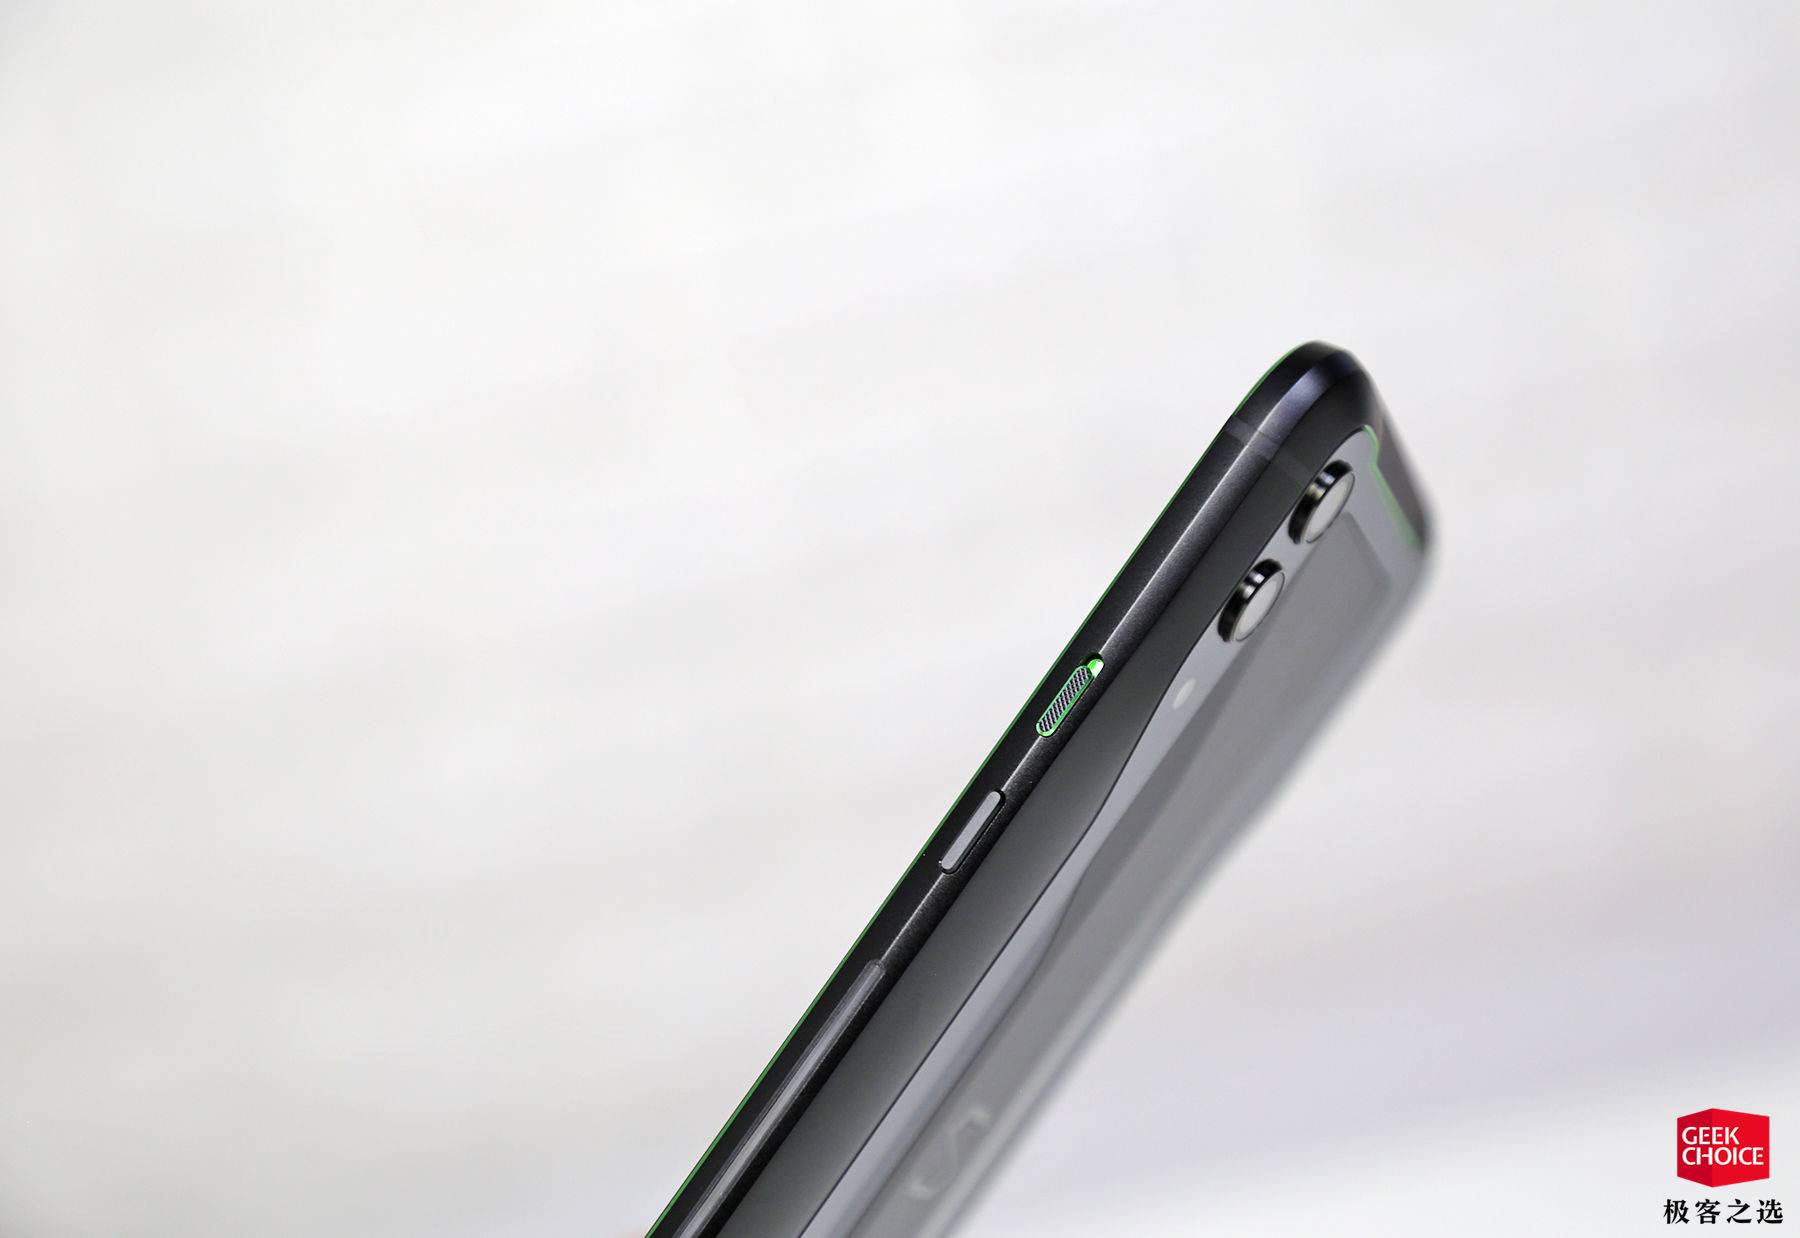 黑鲨游戏手机 2:屏幕指纹、骁龙 855 和跑马灯